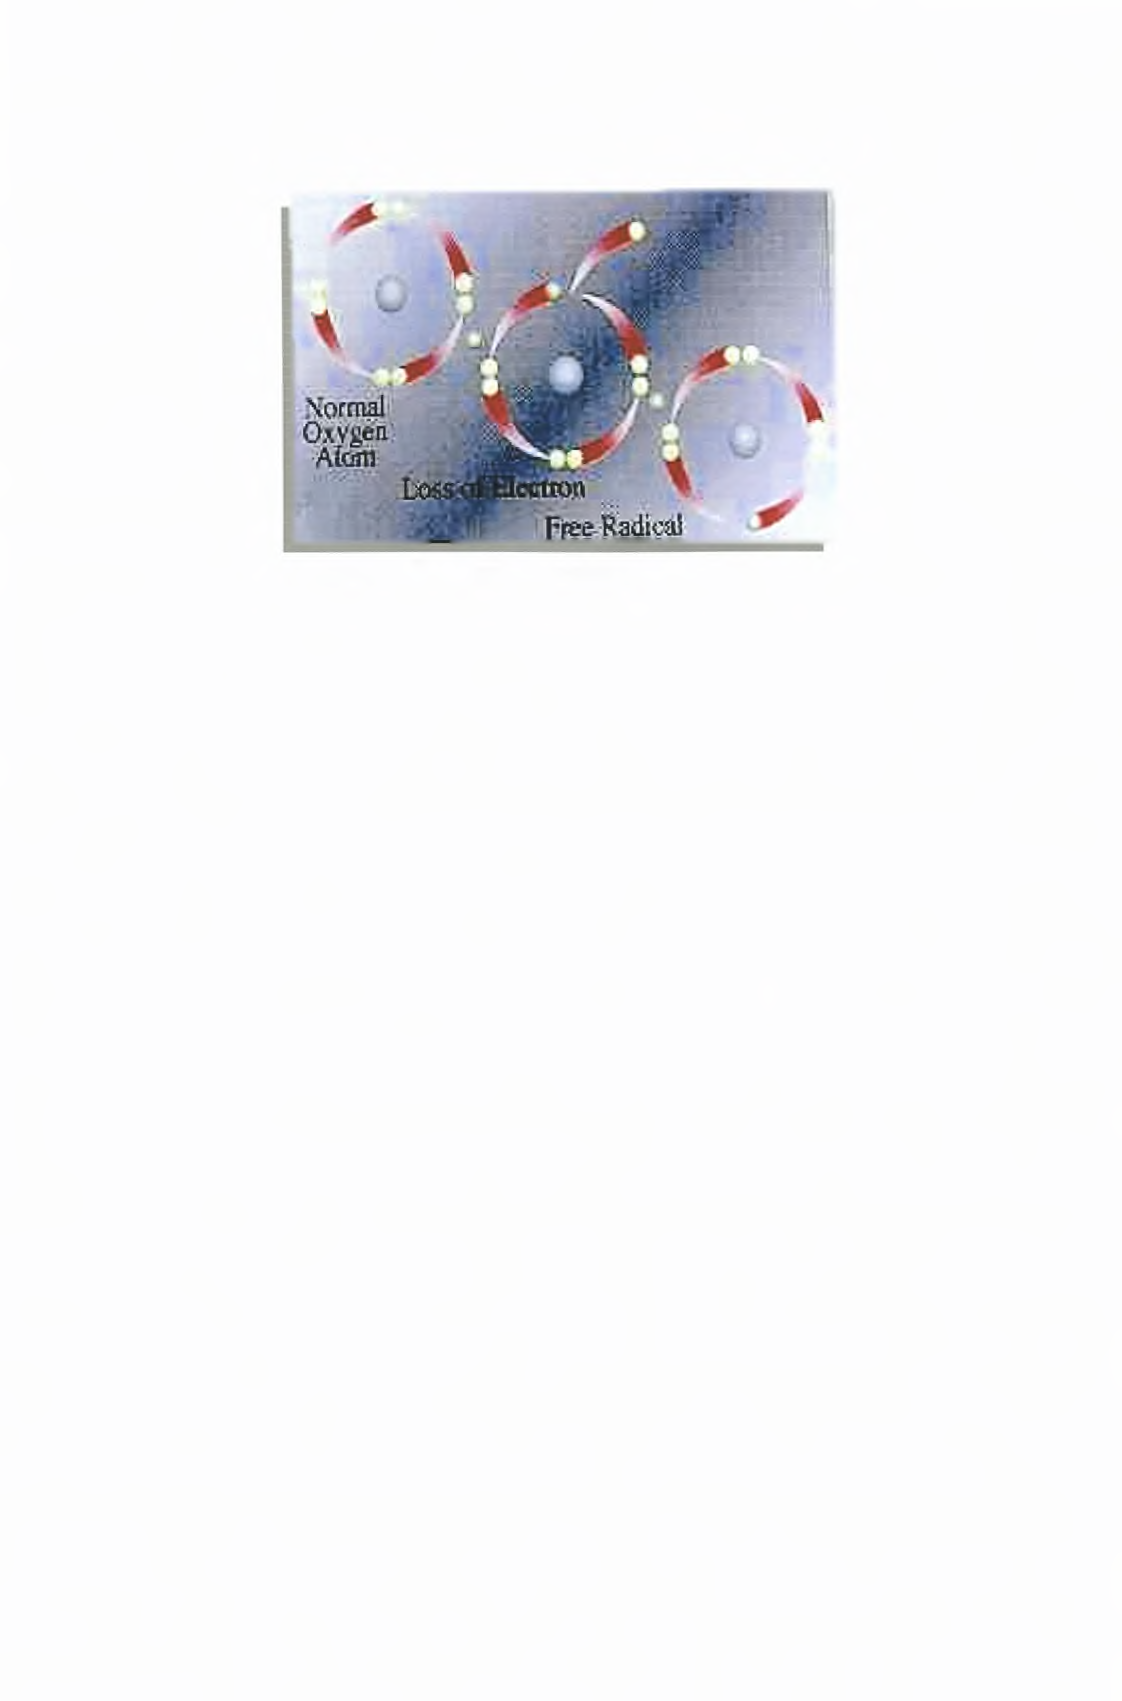 Εικόνα 1: Σχηματισμός ελεύθερων ριζών [182], Ον ελεύθερες ρίζες στην προσπάθενά τους να αποκτήσουν συμπληρωμένη στιβάδα σθένους, προσβάλλουν μόρια στόχους μετατρέποντάς τα και αυτά σε ρίζες.